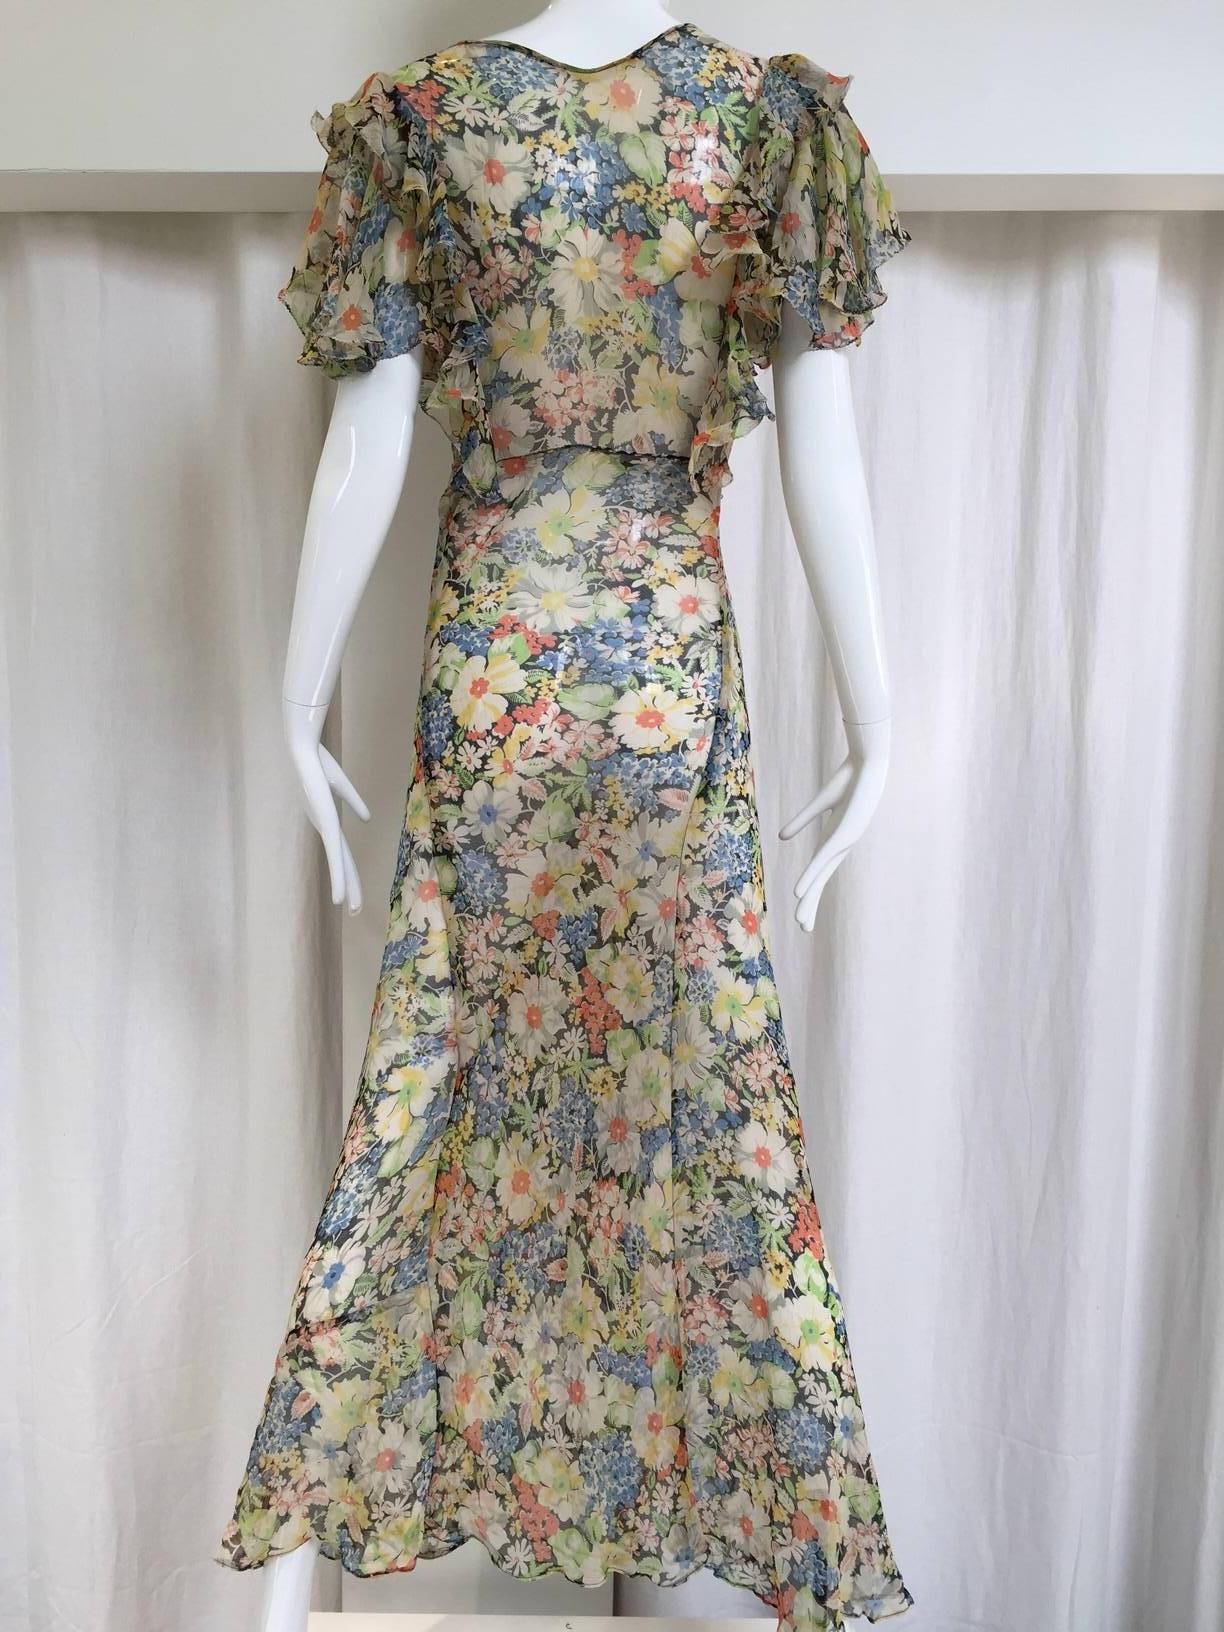 1930s silk chiffon floral print summer dress. Size: 2/4
Bust: 32